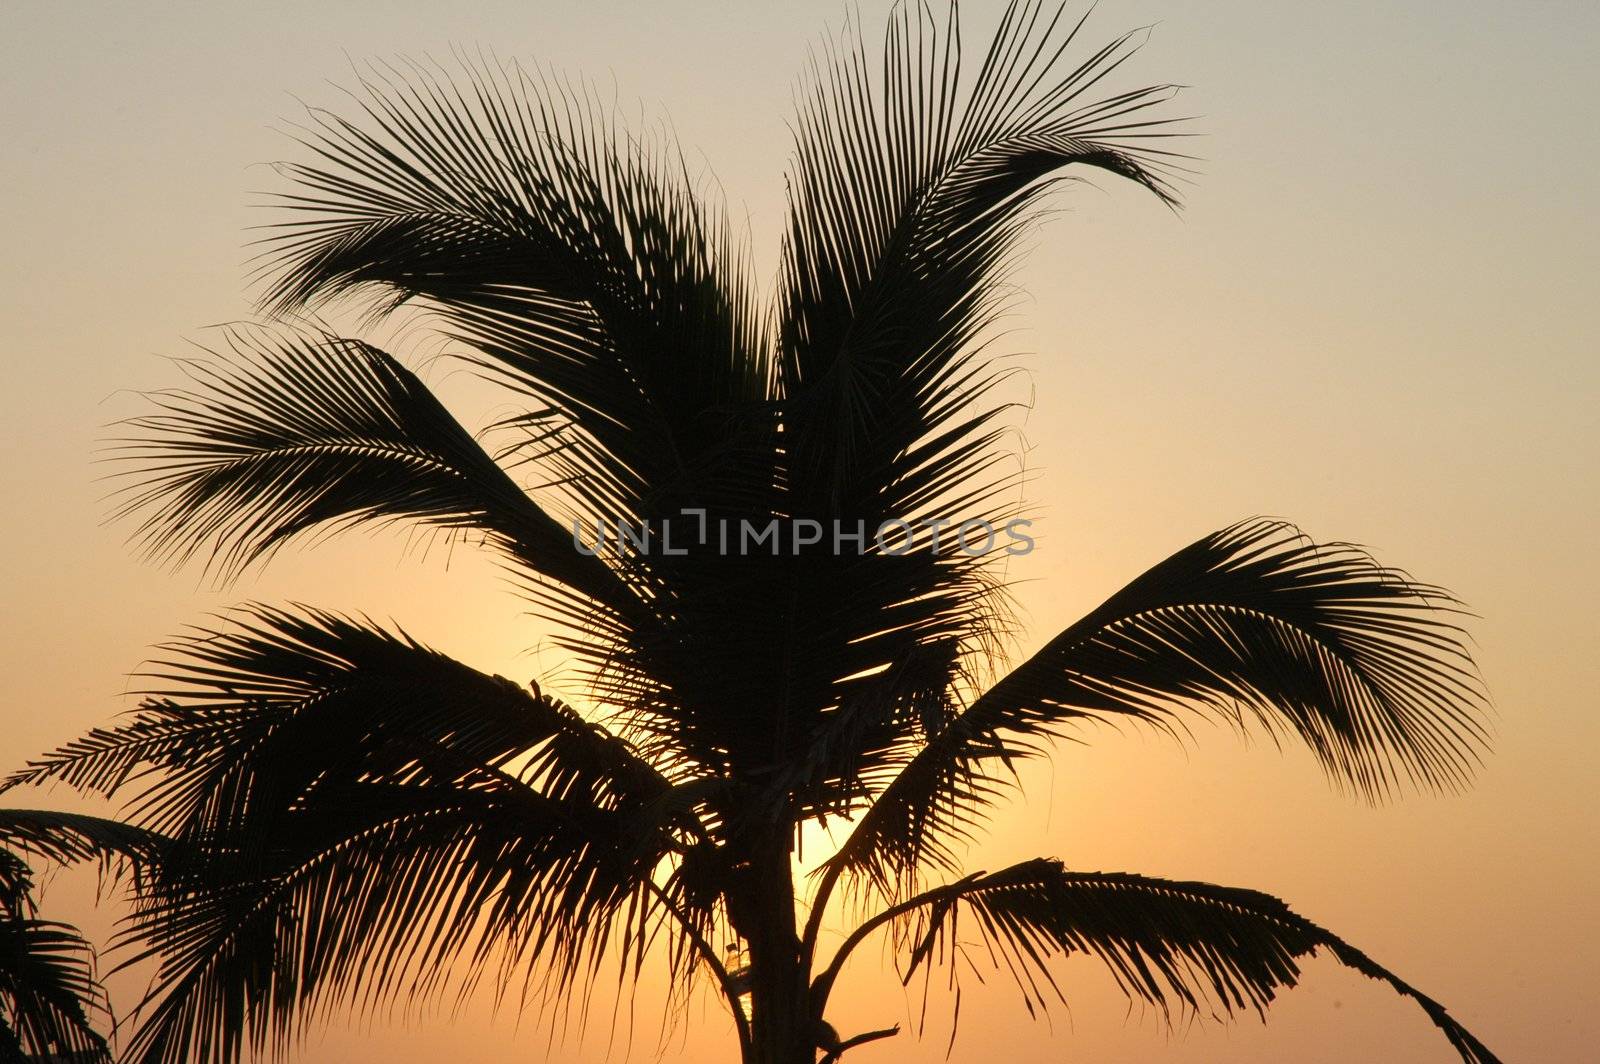 Palm in susnet light in Puerto Escondido by haak78